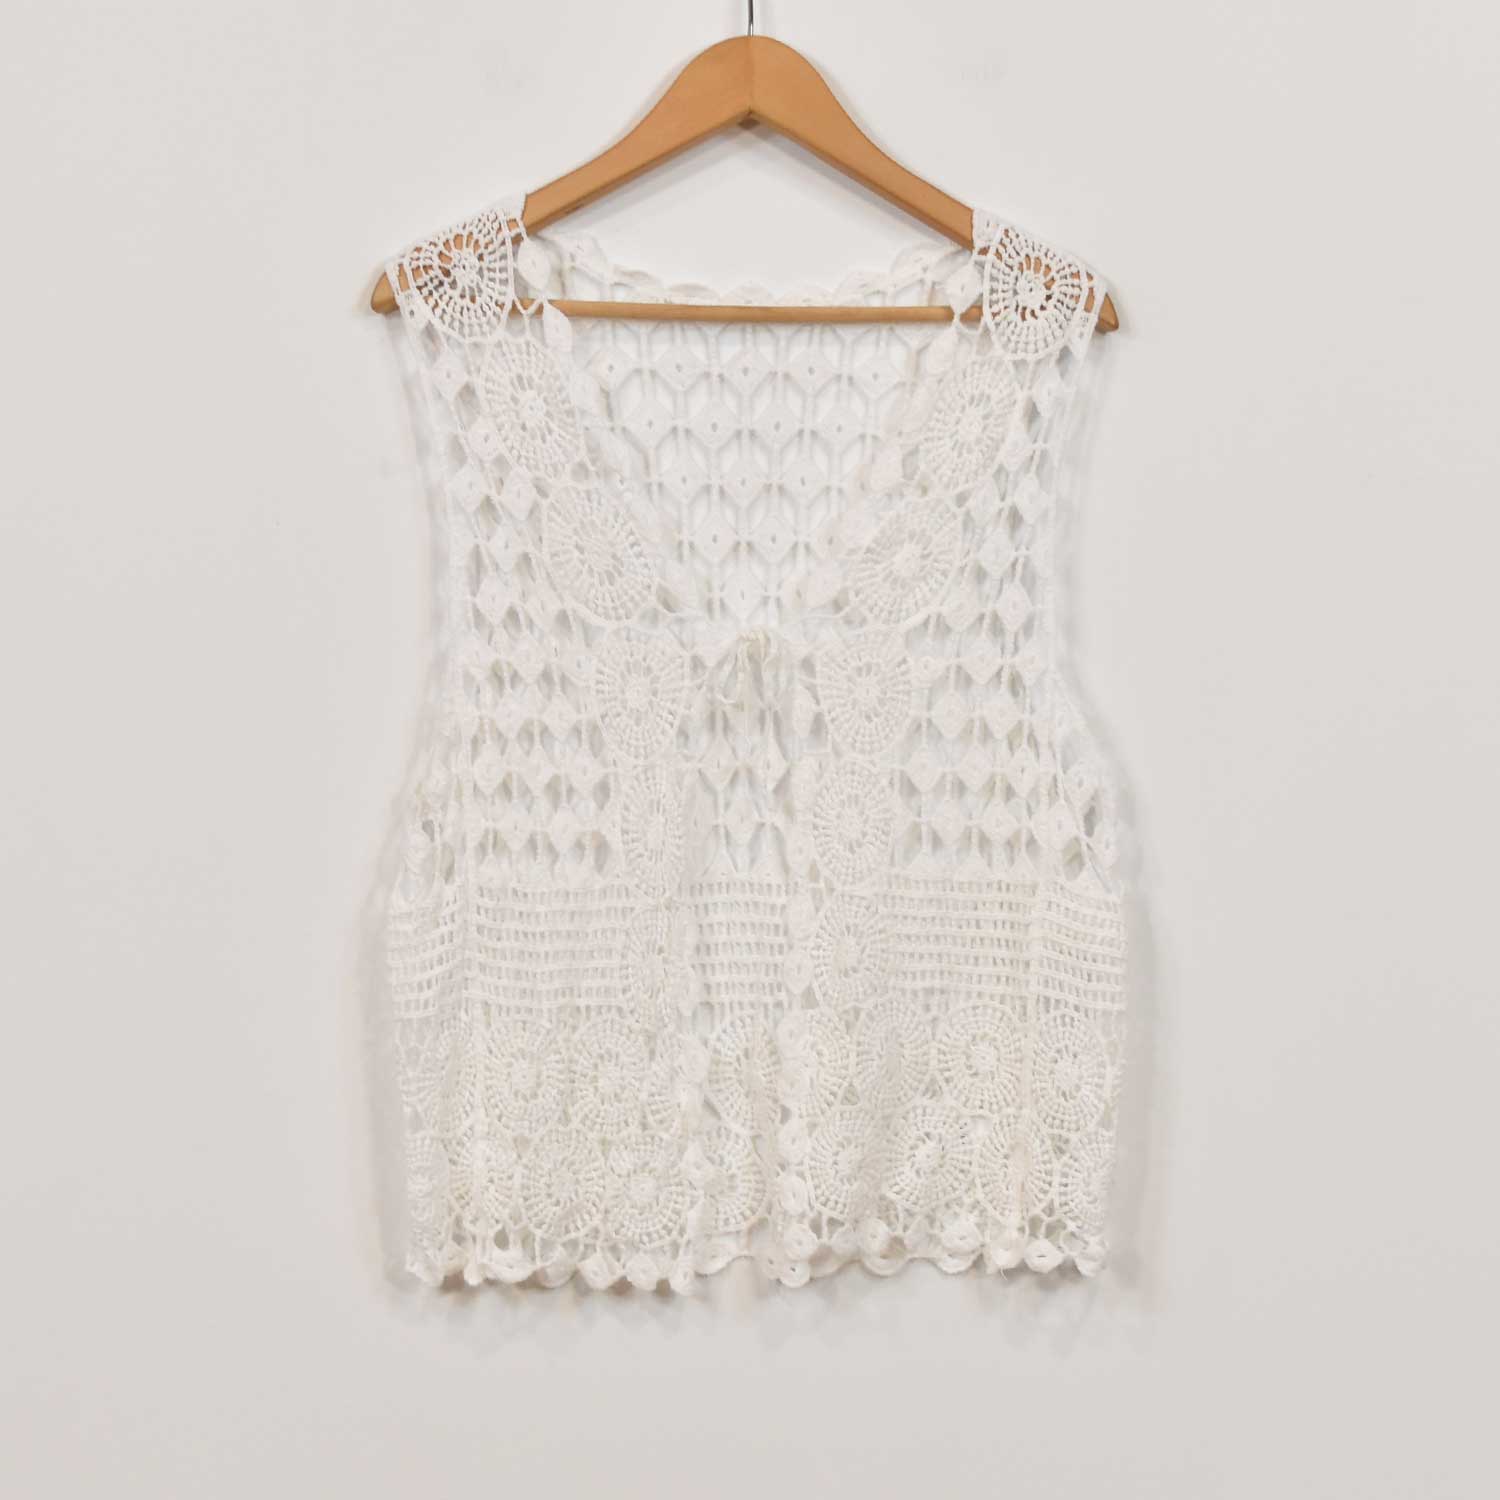 White crochet waistcoat